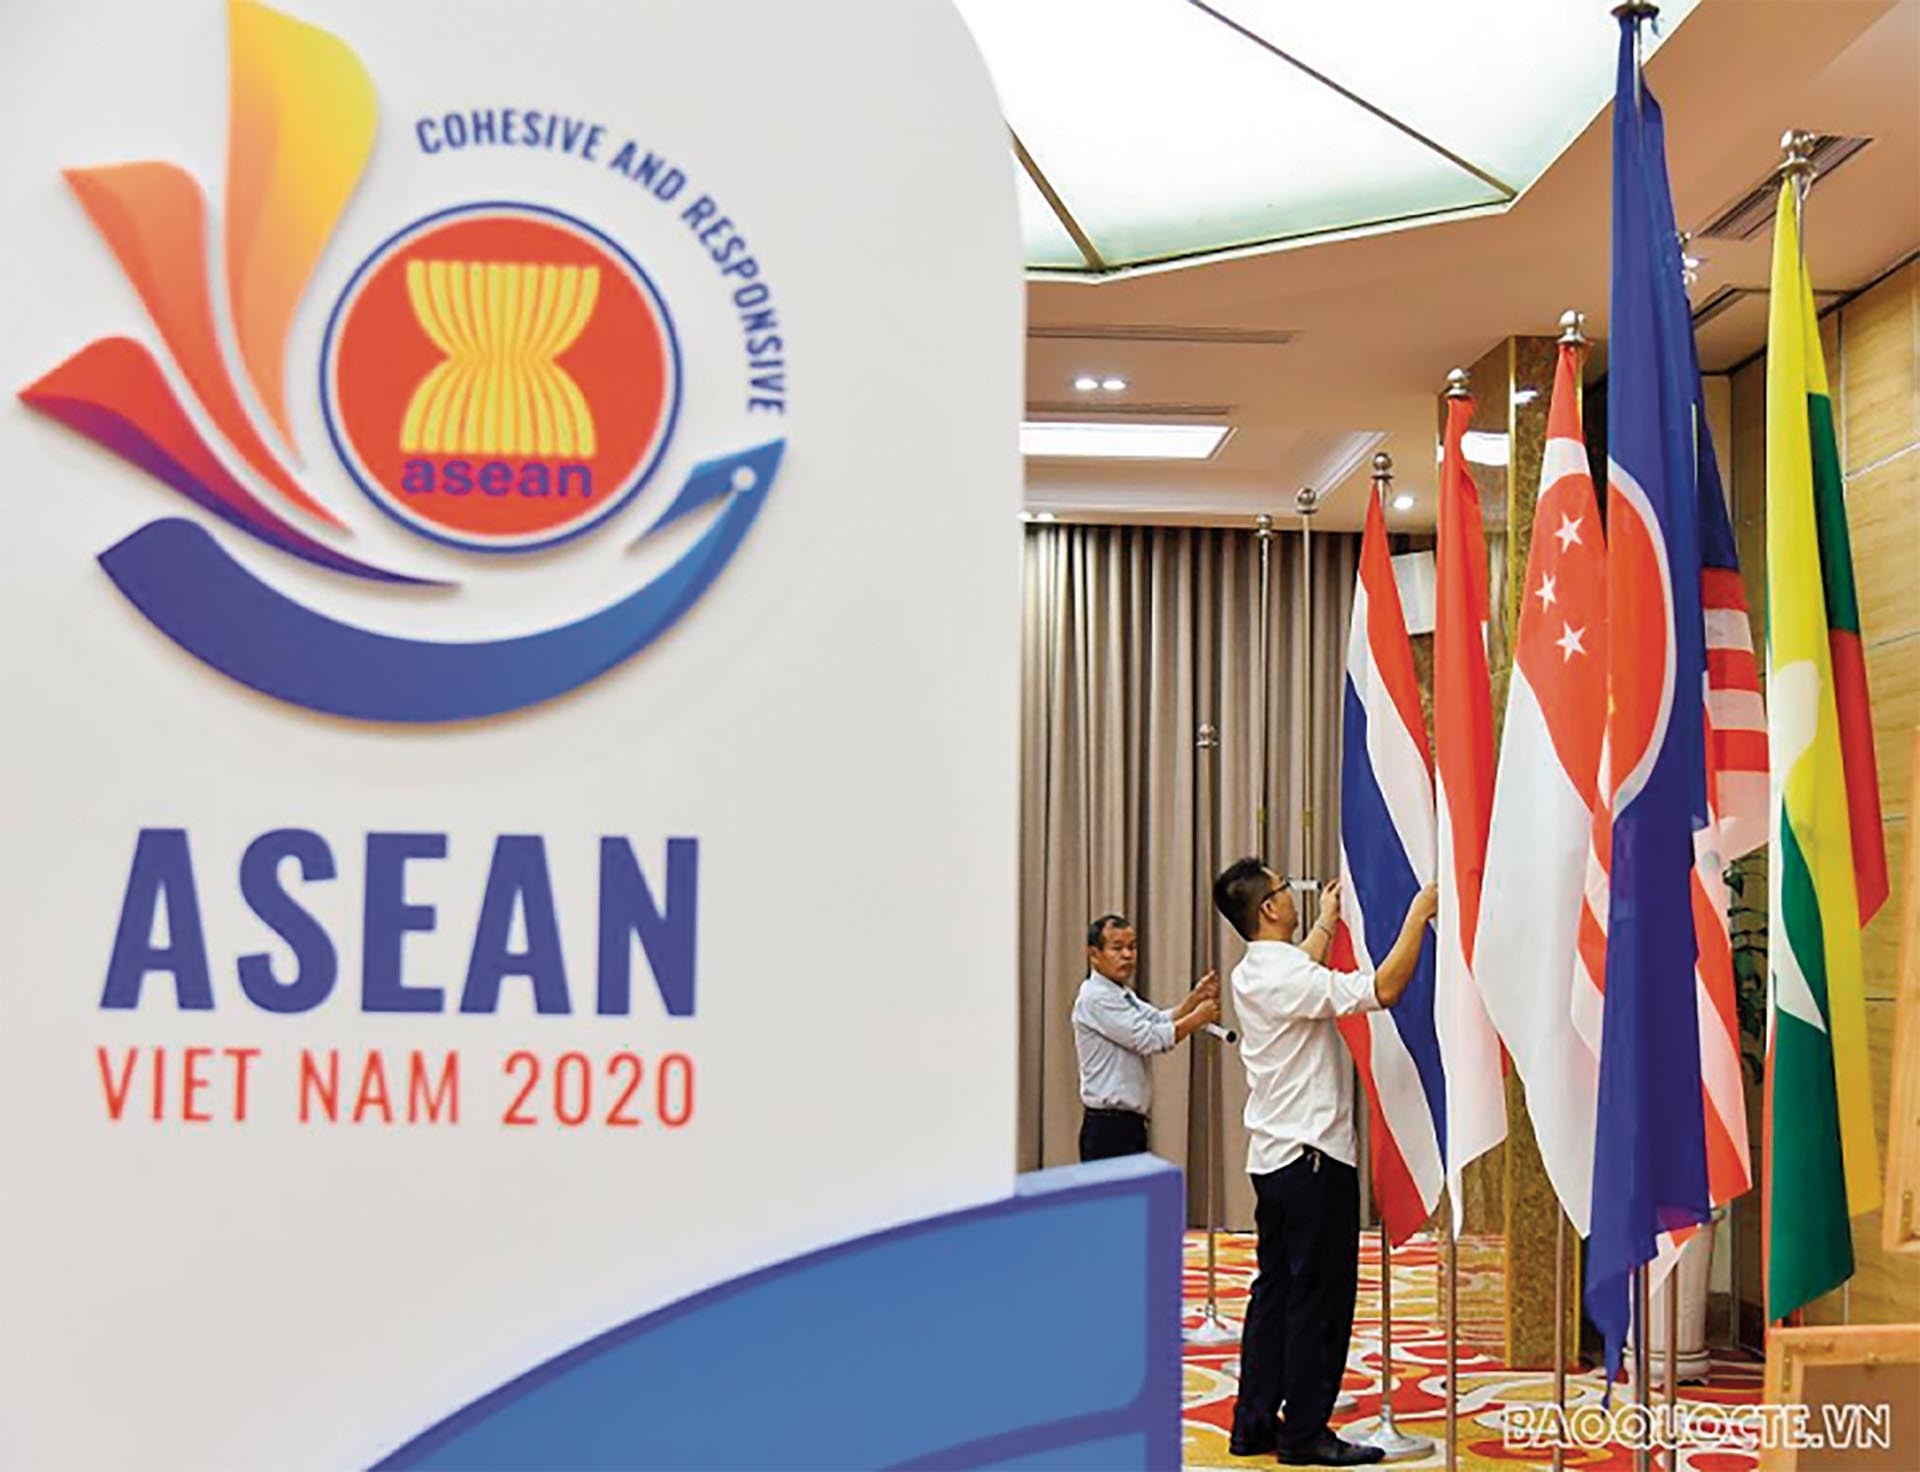 Dù với vai trò là Chủ tịch ASEAN 2020 hay là thành viên, Việt Nam luôn tích cực, trách nhiệm và chủ động trong Hiệp hội.